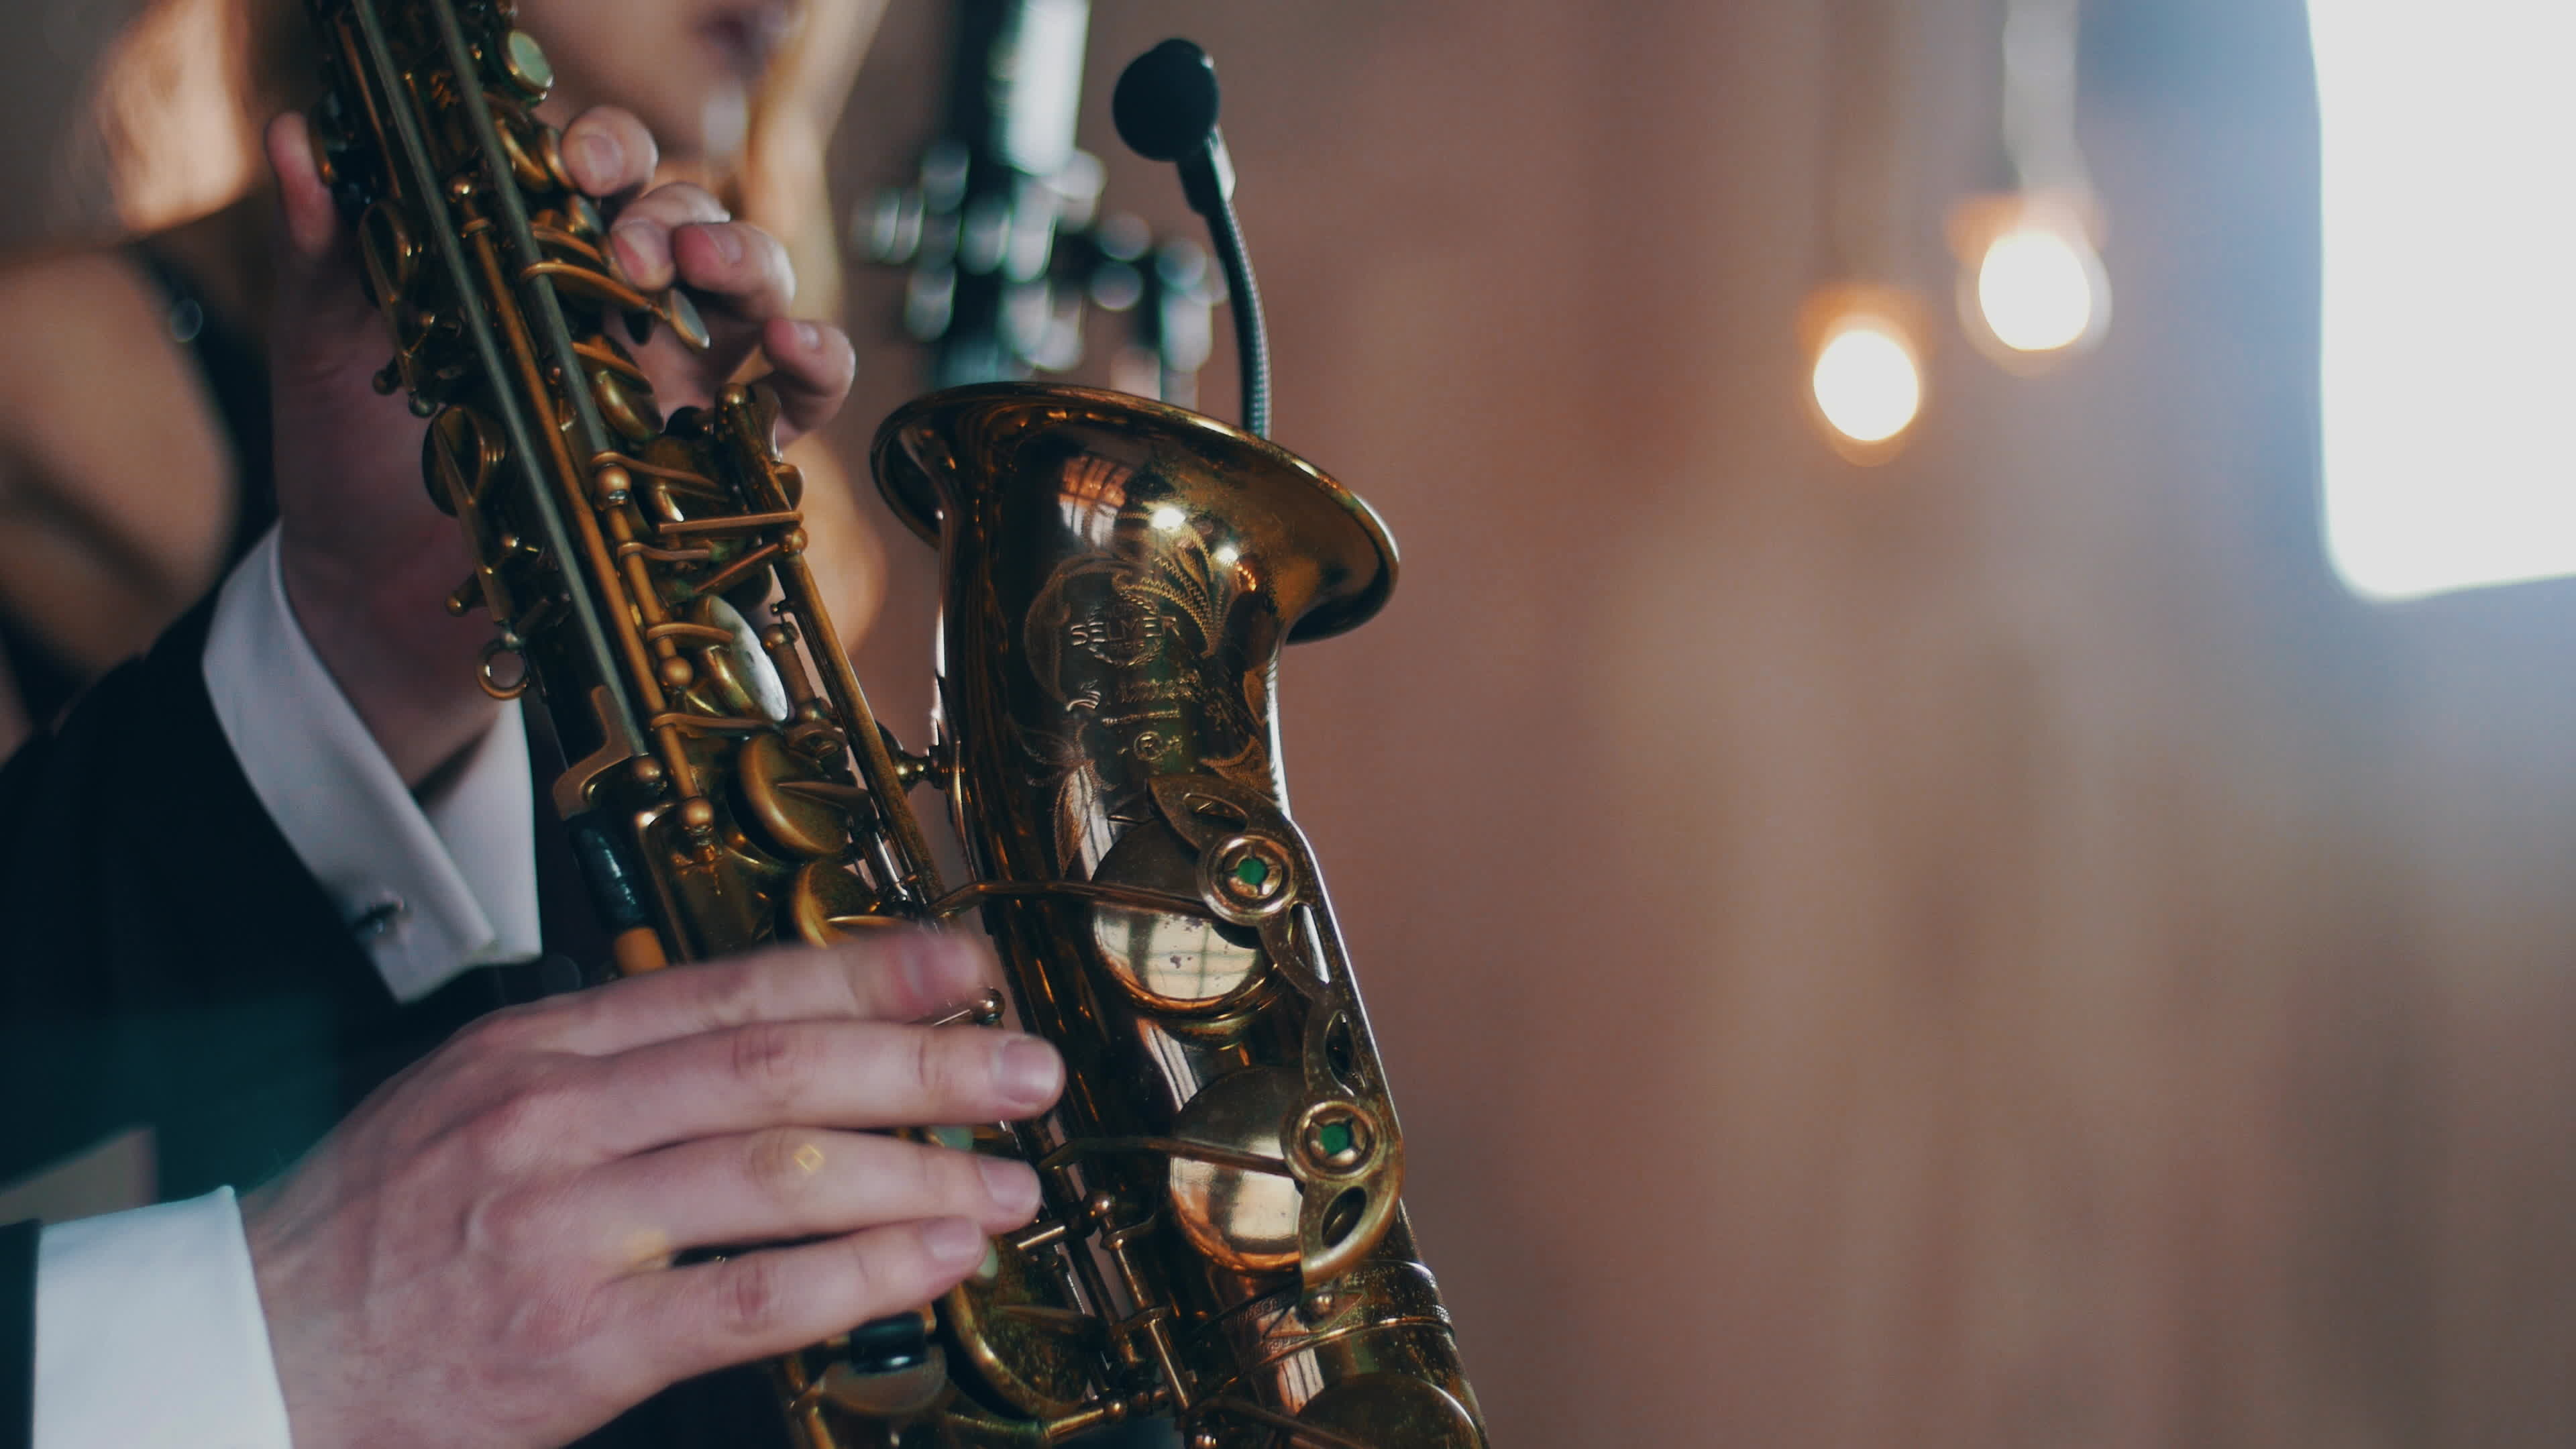 Saxophone: Jazz artist, Professional musician, A single-reed brass musical instrument. 3840x2160 4K Wallpaper.